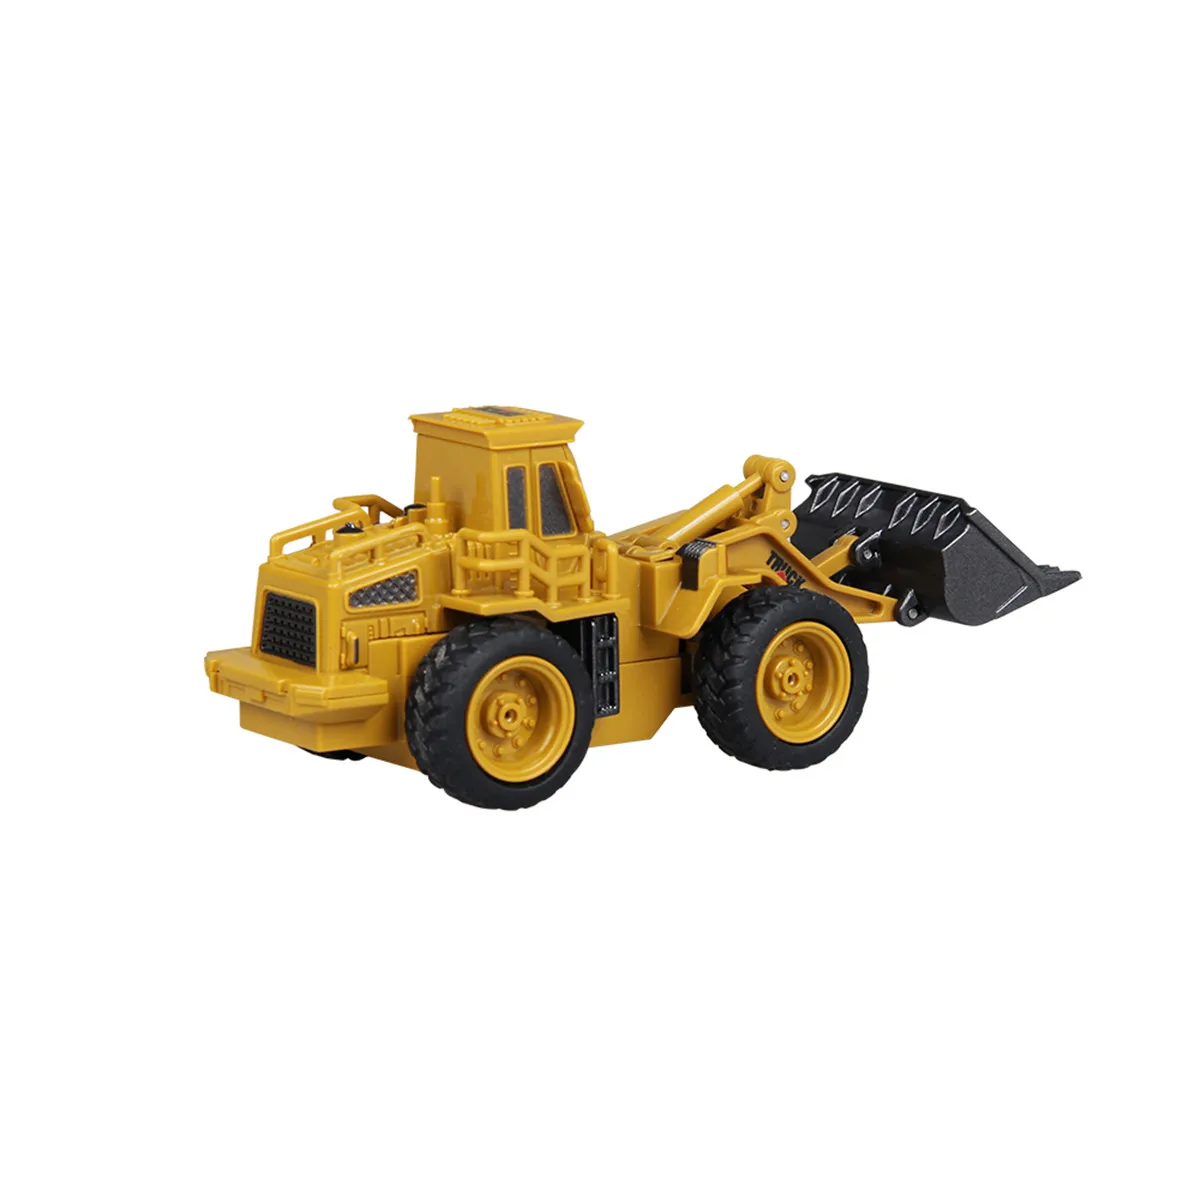 Мини-игрушка RC Truck самосвал автомобили детский экскаватор кран бульдозер дистанционное управление электрические игрушки модели инженерных транспортных средств